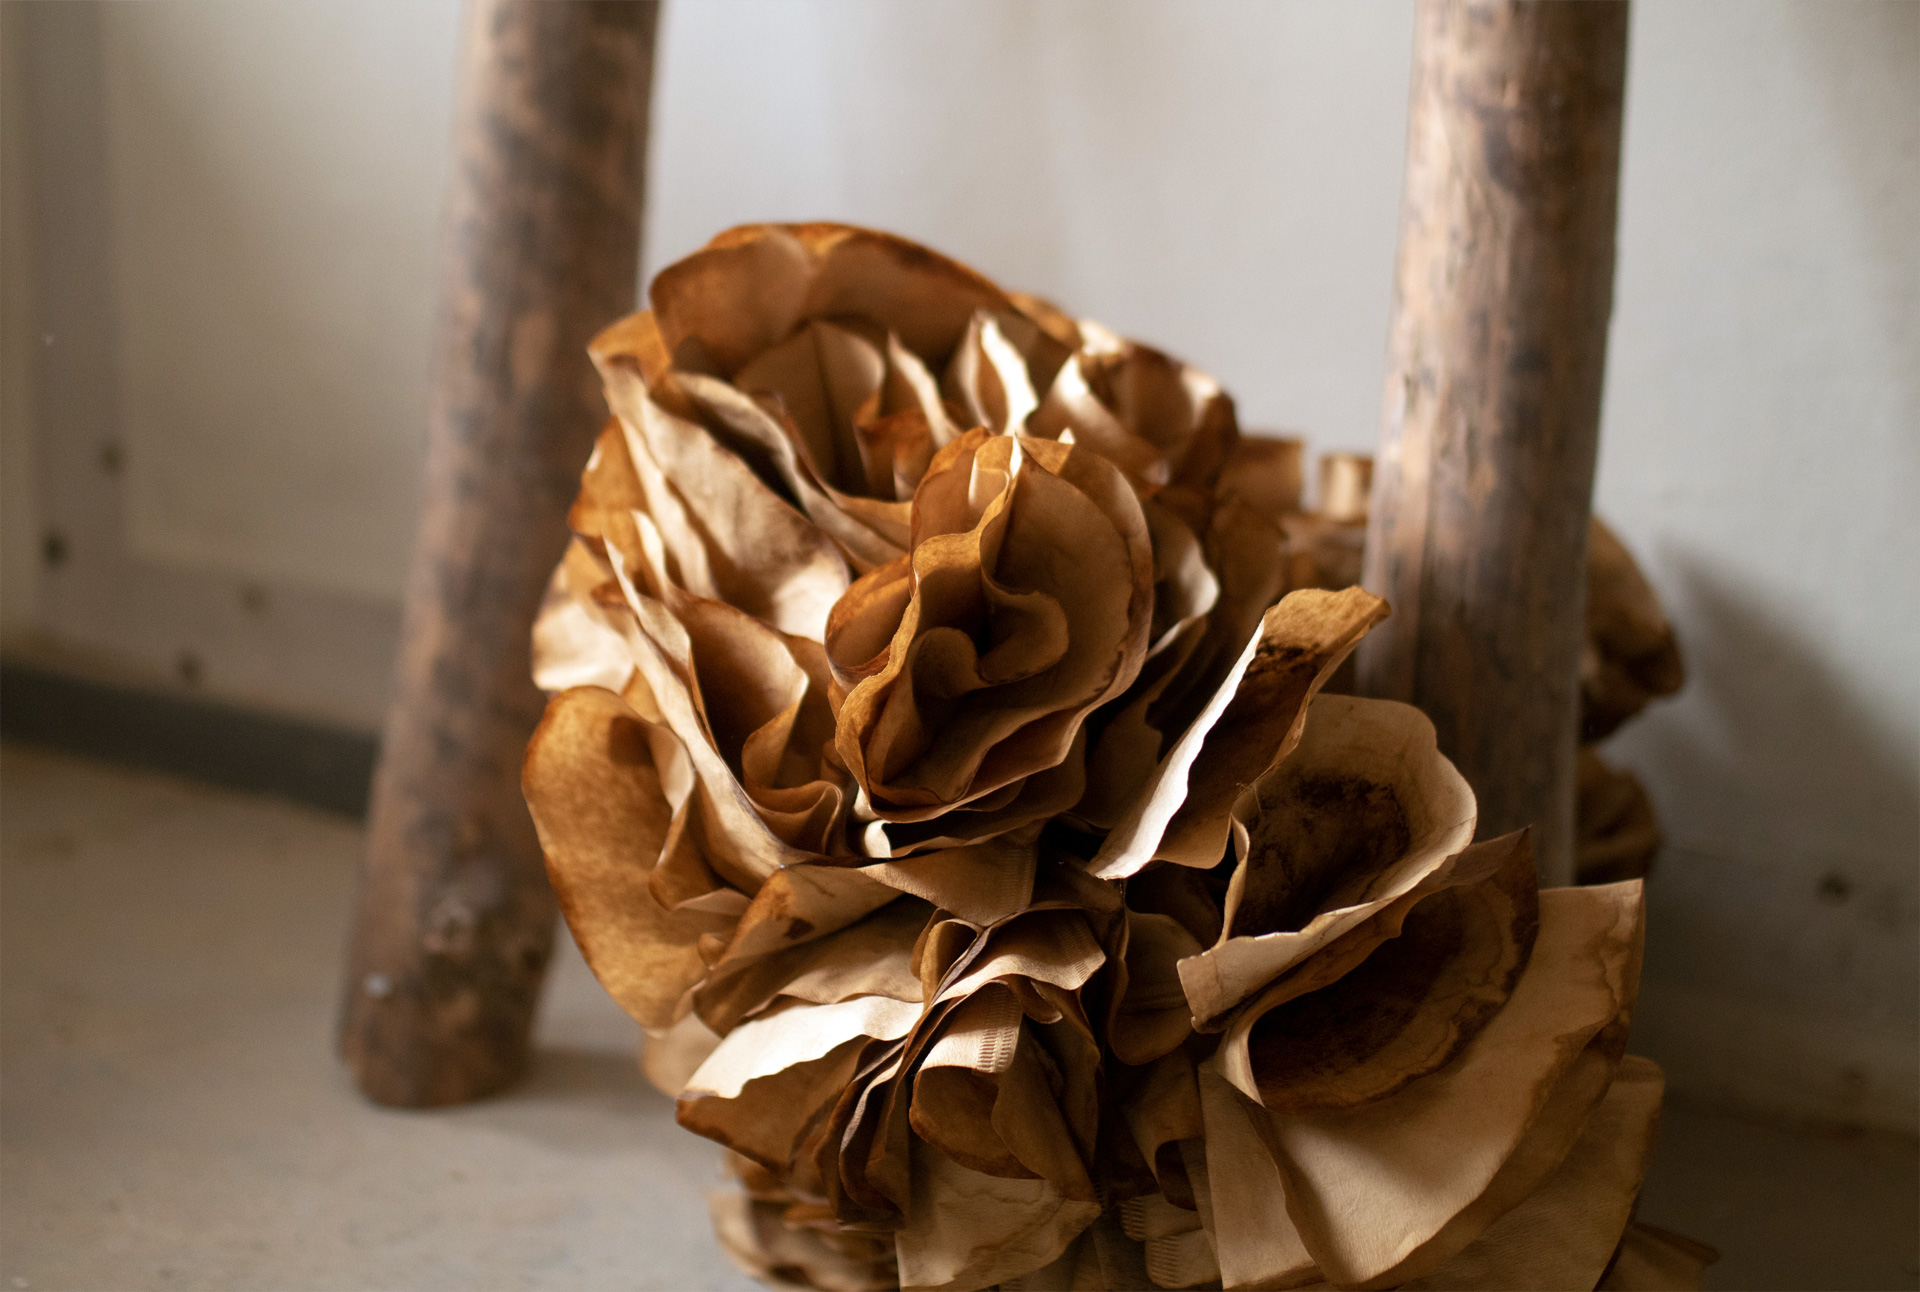 Brązowo-beżowa kompozycja, z prawej strony zużyte filtry do kawy sklejone ze sobą w organiczną formę przypominającą kwiat, oplatające trzonek, z prawej strony podobny trzonek.